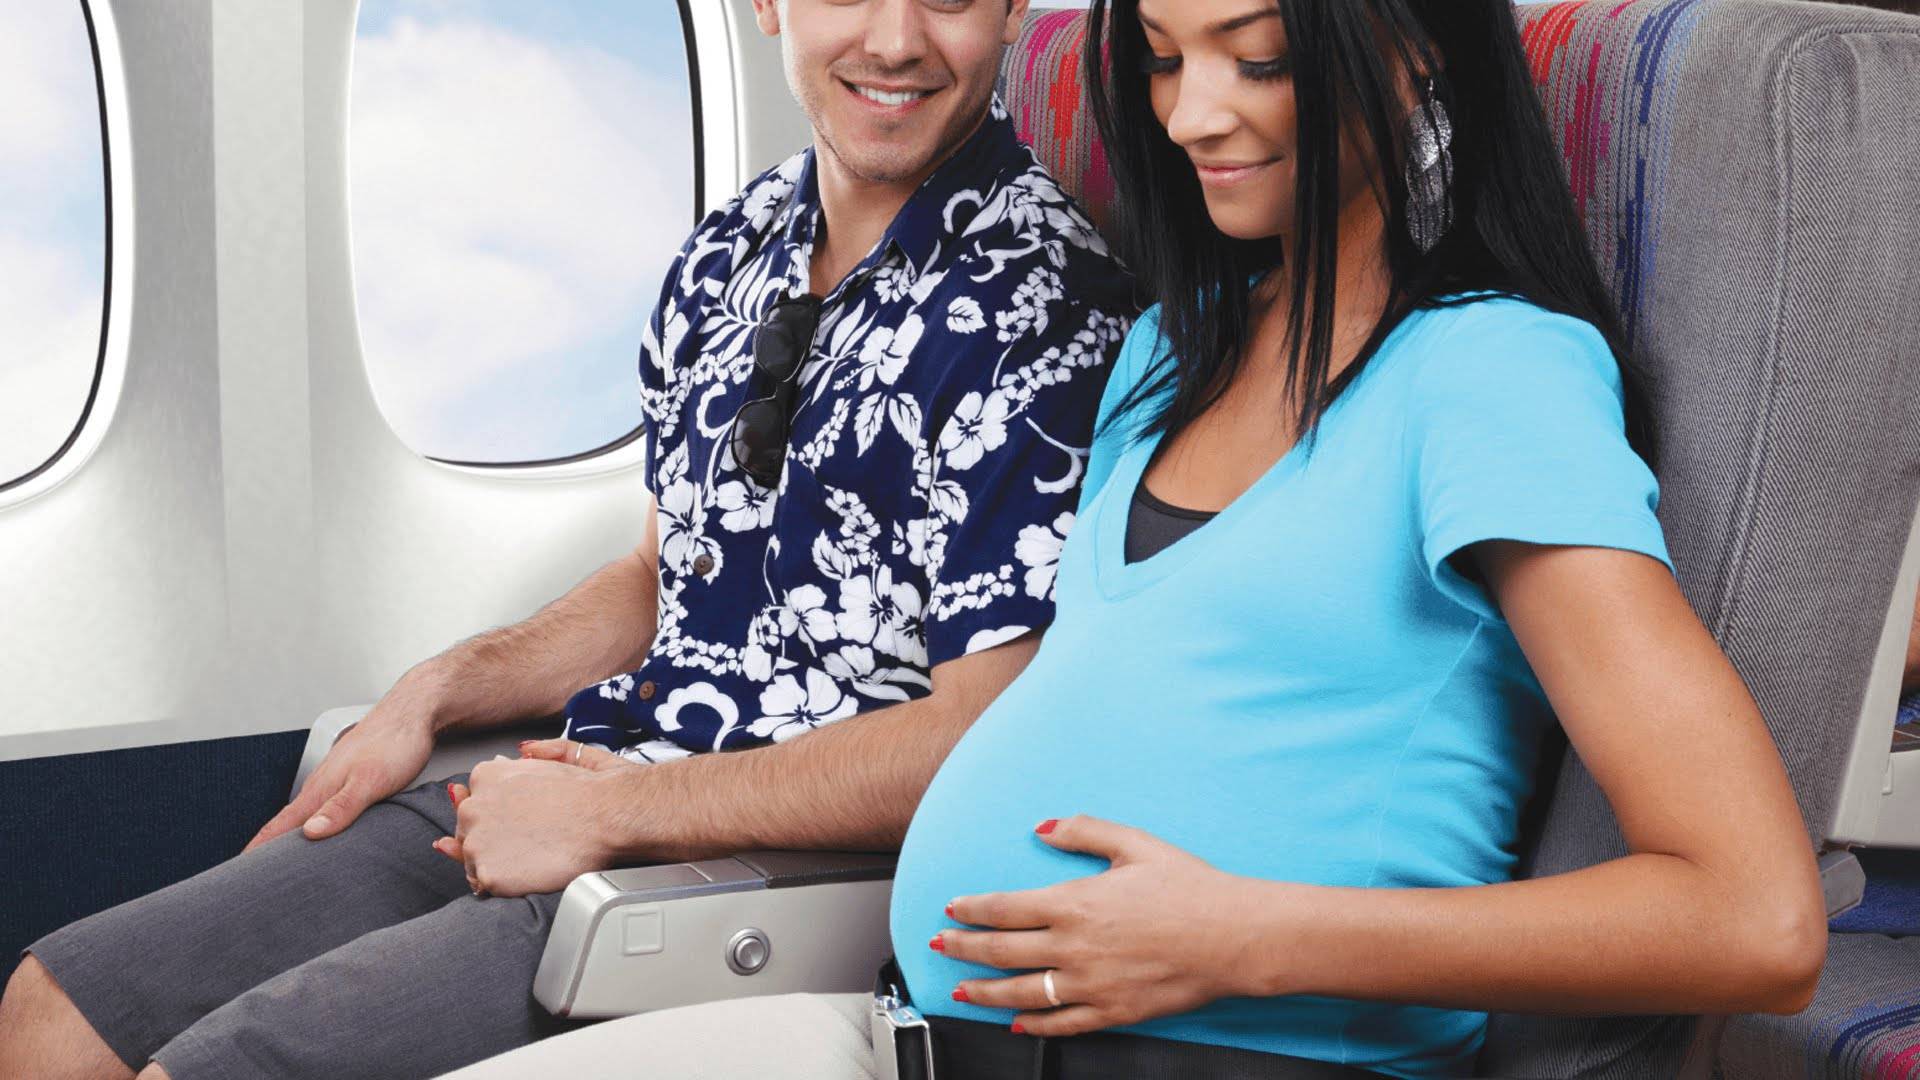 Самолет во время беременности | уроки для мам